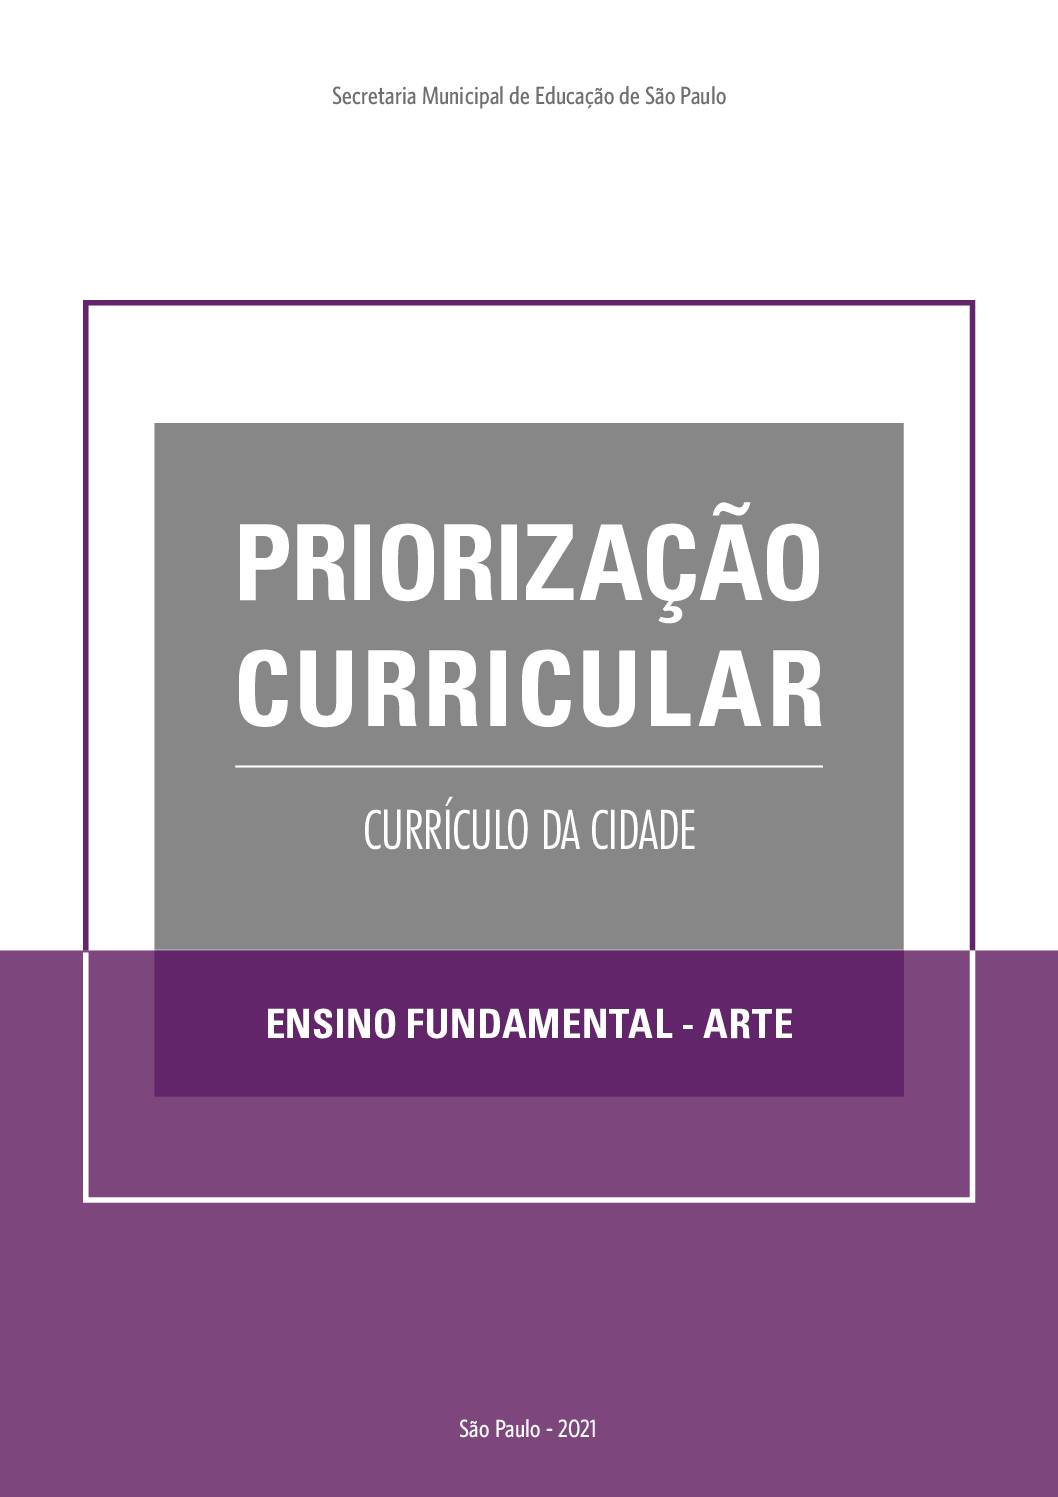 Publicação que apresenta os objetivos de aprendizagem prioritários do Currículo da Cidade de Arte  para o Ensino Fundamental.